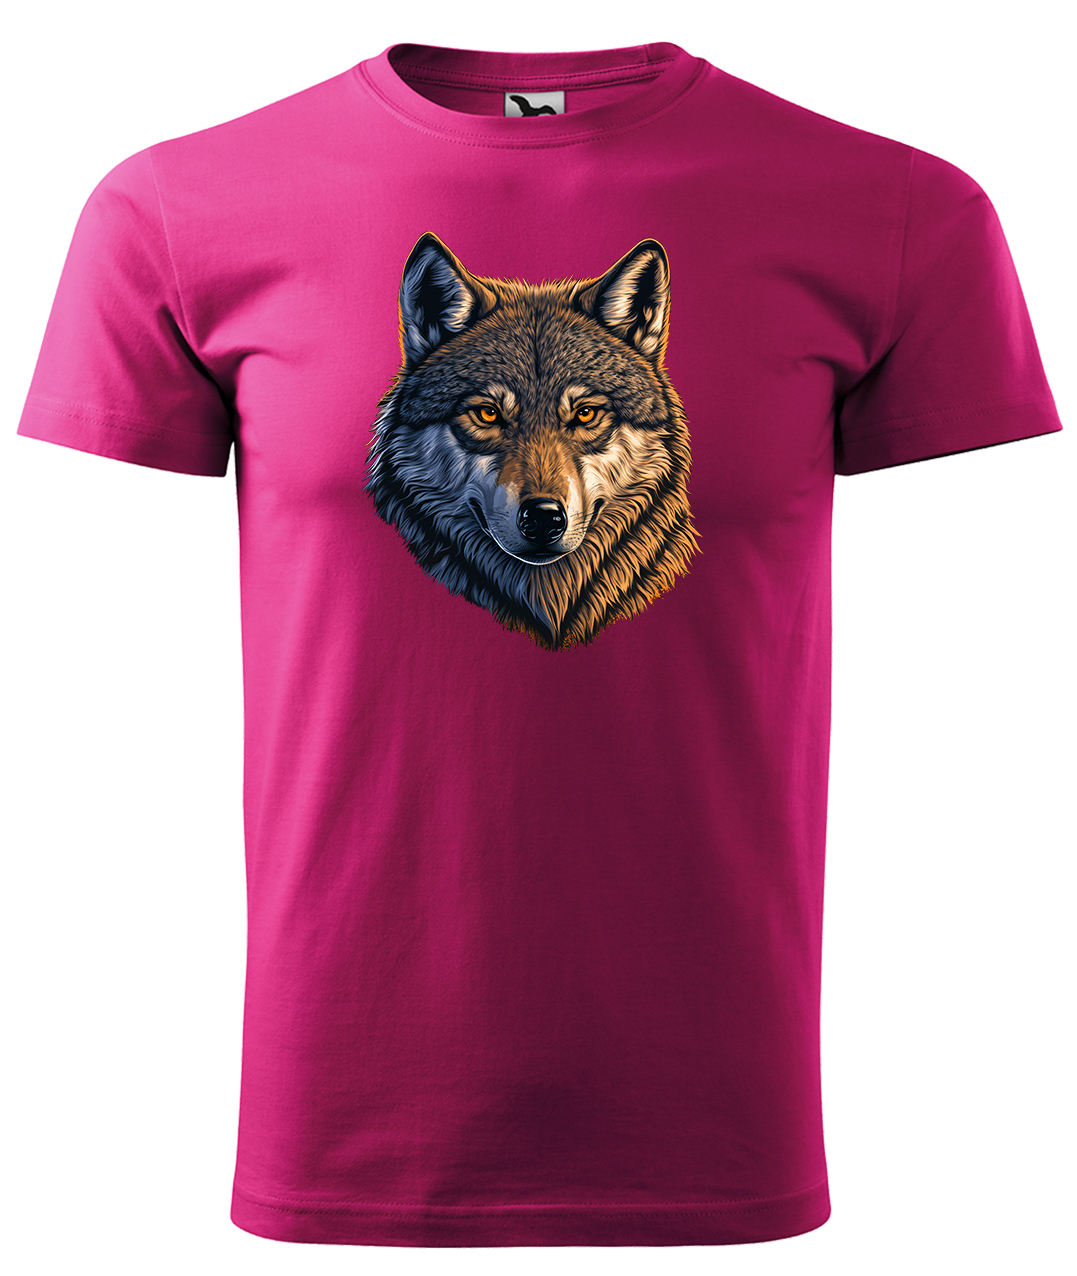 Dětské tričko s vlkem - Hlava vlka Velikost: 4 roky / 110 cm, Barva: Malinová (63), Délka rukávu: Krátký rukáv